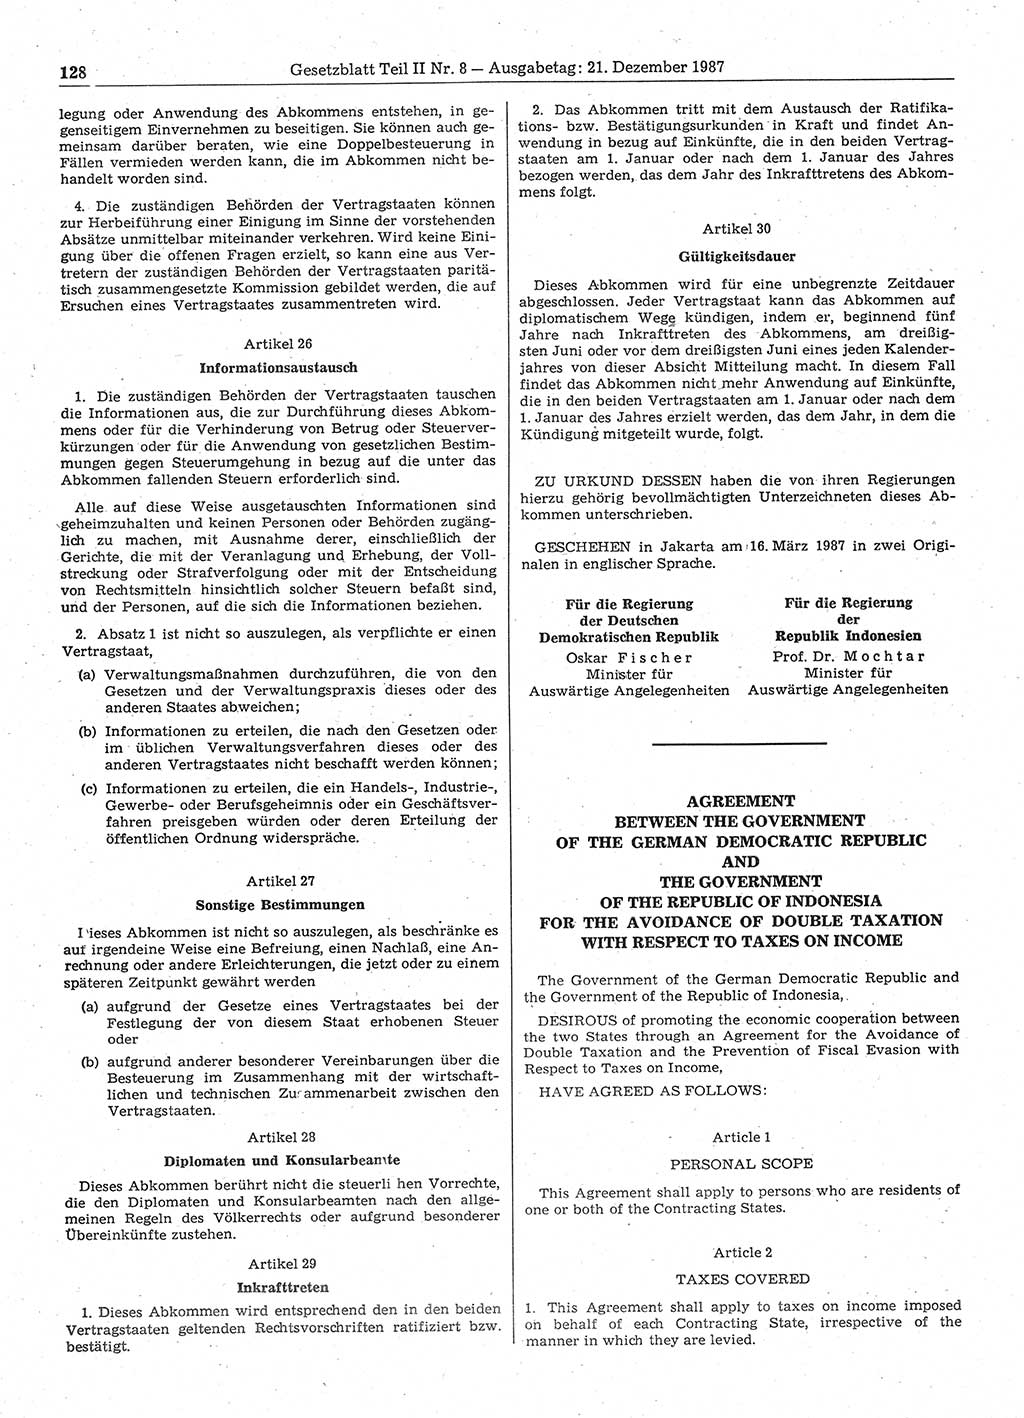 Gesetzblatt (GBl.) der Deutschen Demokratischen Republik (DDR) Teil ⅠⅠ 1987, Seite 128 (GBl. DDR ⅠⅠ 1987, S. 128)